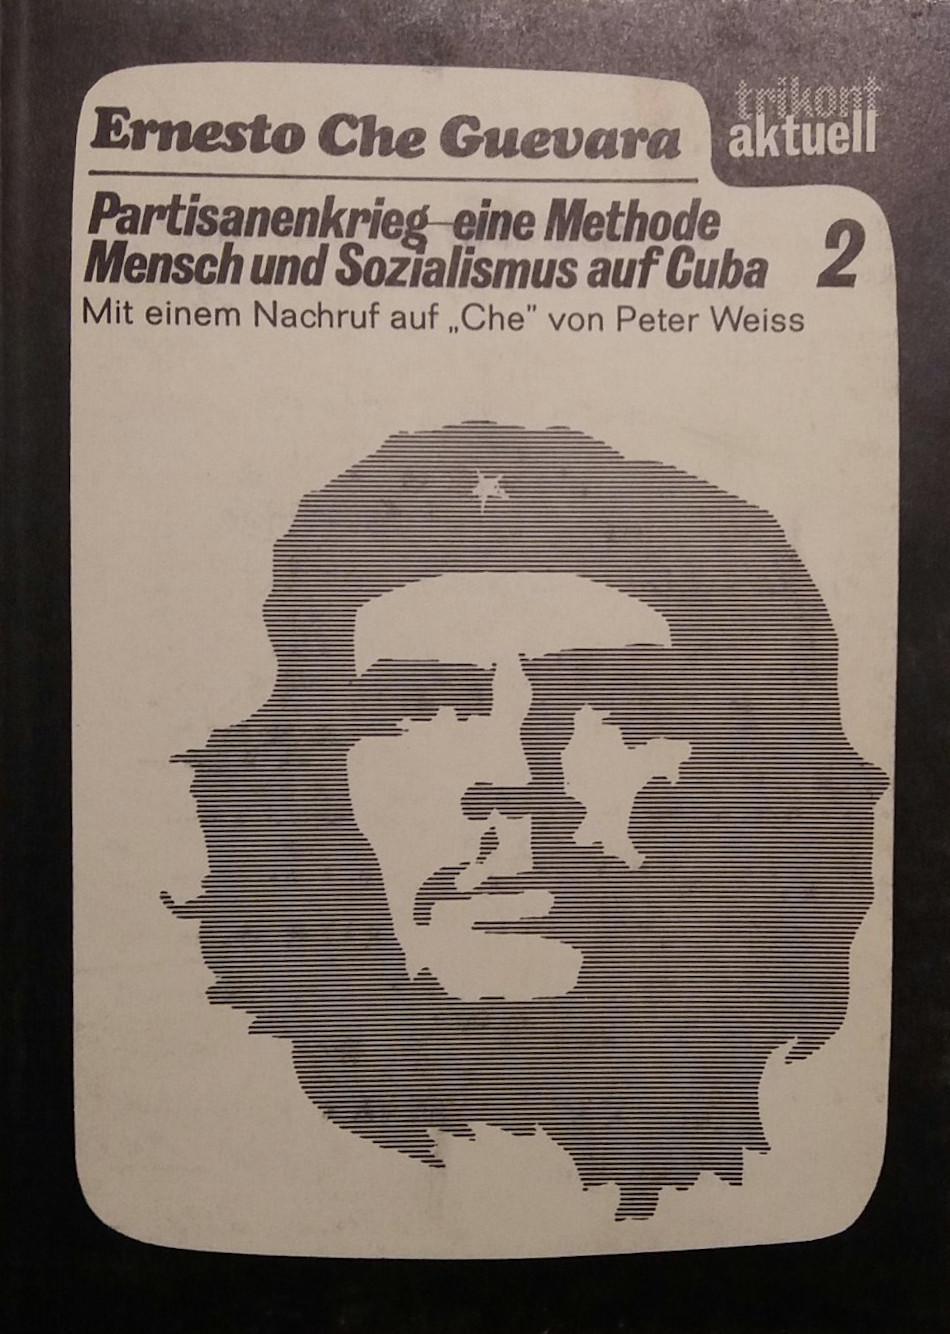 Ernesto Che Guevara: Partisanenkrieg, eine Methode/Mensch und Sozialismus auf Cuba (German language, 1968, Trikont-Verlag)